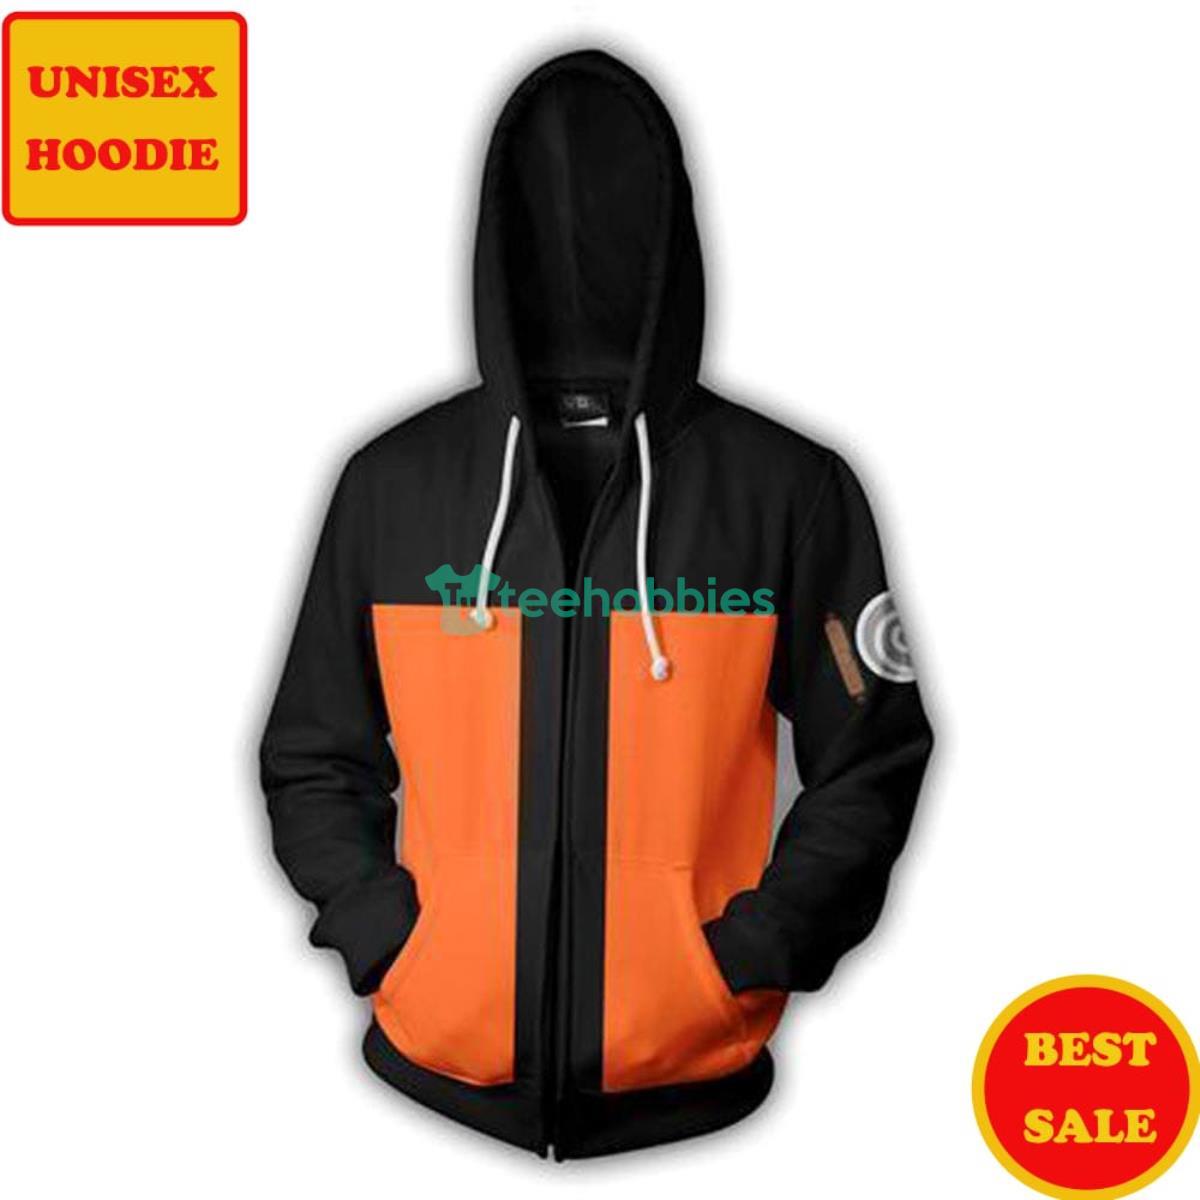 Naruto x LV inspire design hoodie  Naruto hoodie, Hoodies, Naruto